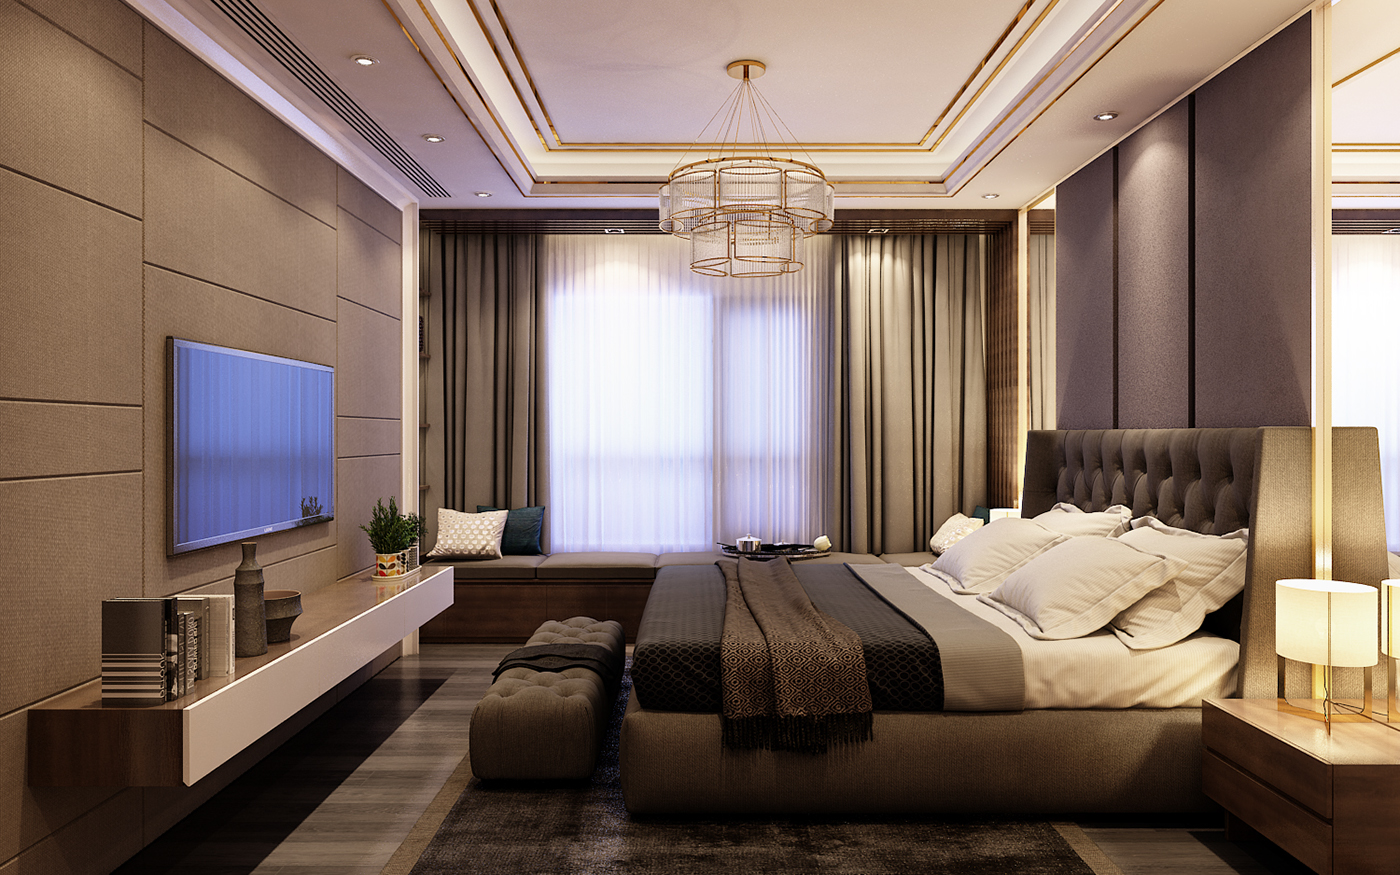 thiết kế nội thất chung cư tại Hà Nội Dự án HongKong Tower - Hà Nội 23 1538380942